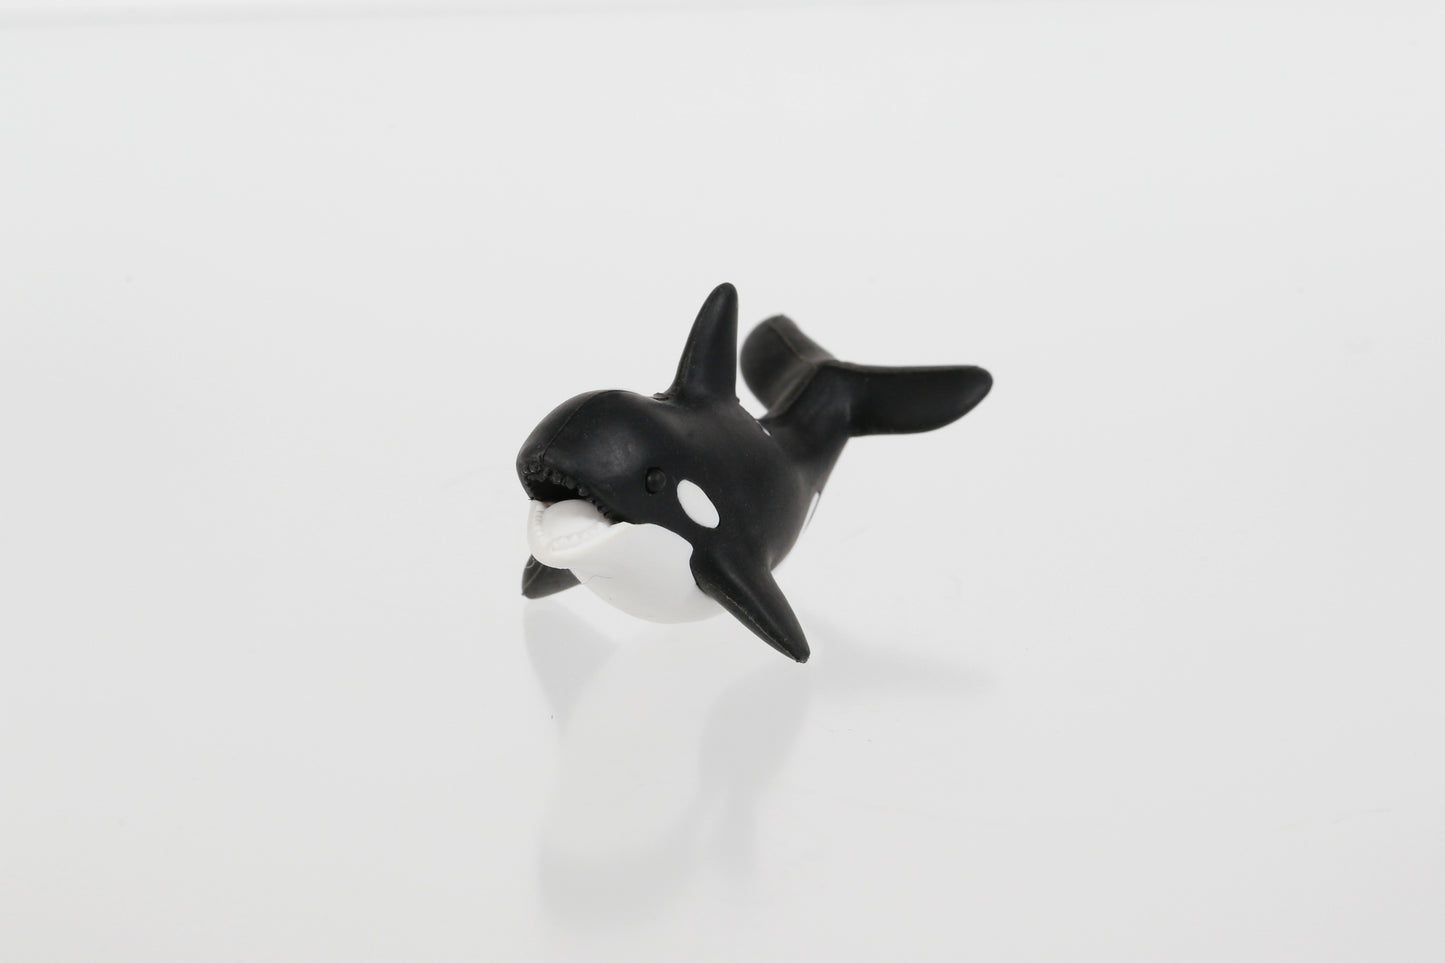 38186 Orca Iwako Puzzle Eraser-60